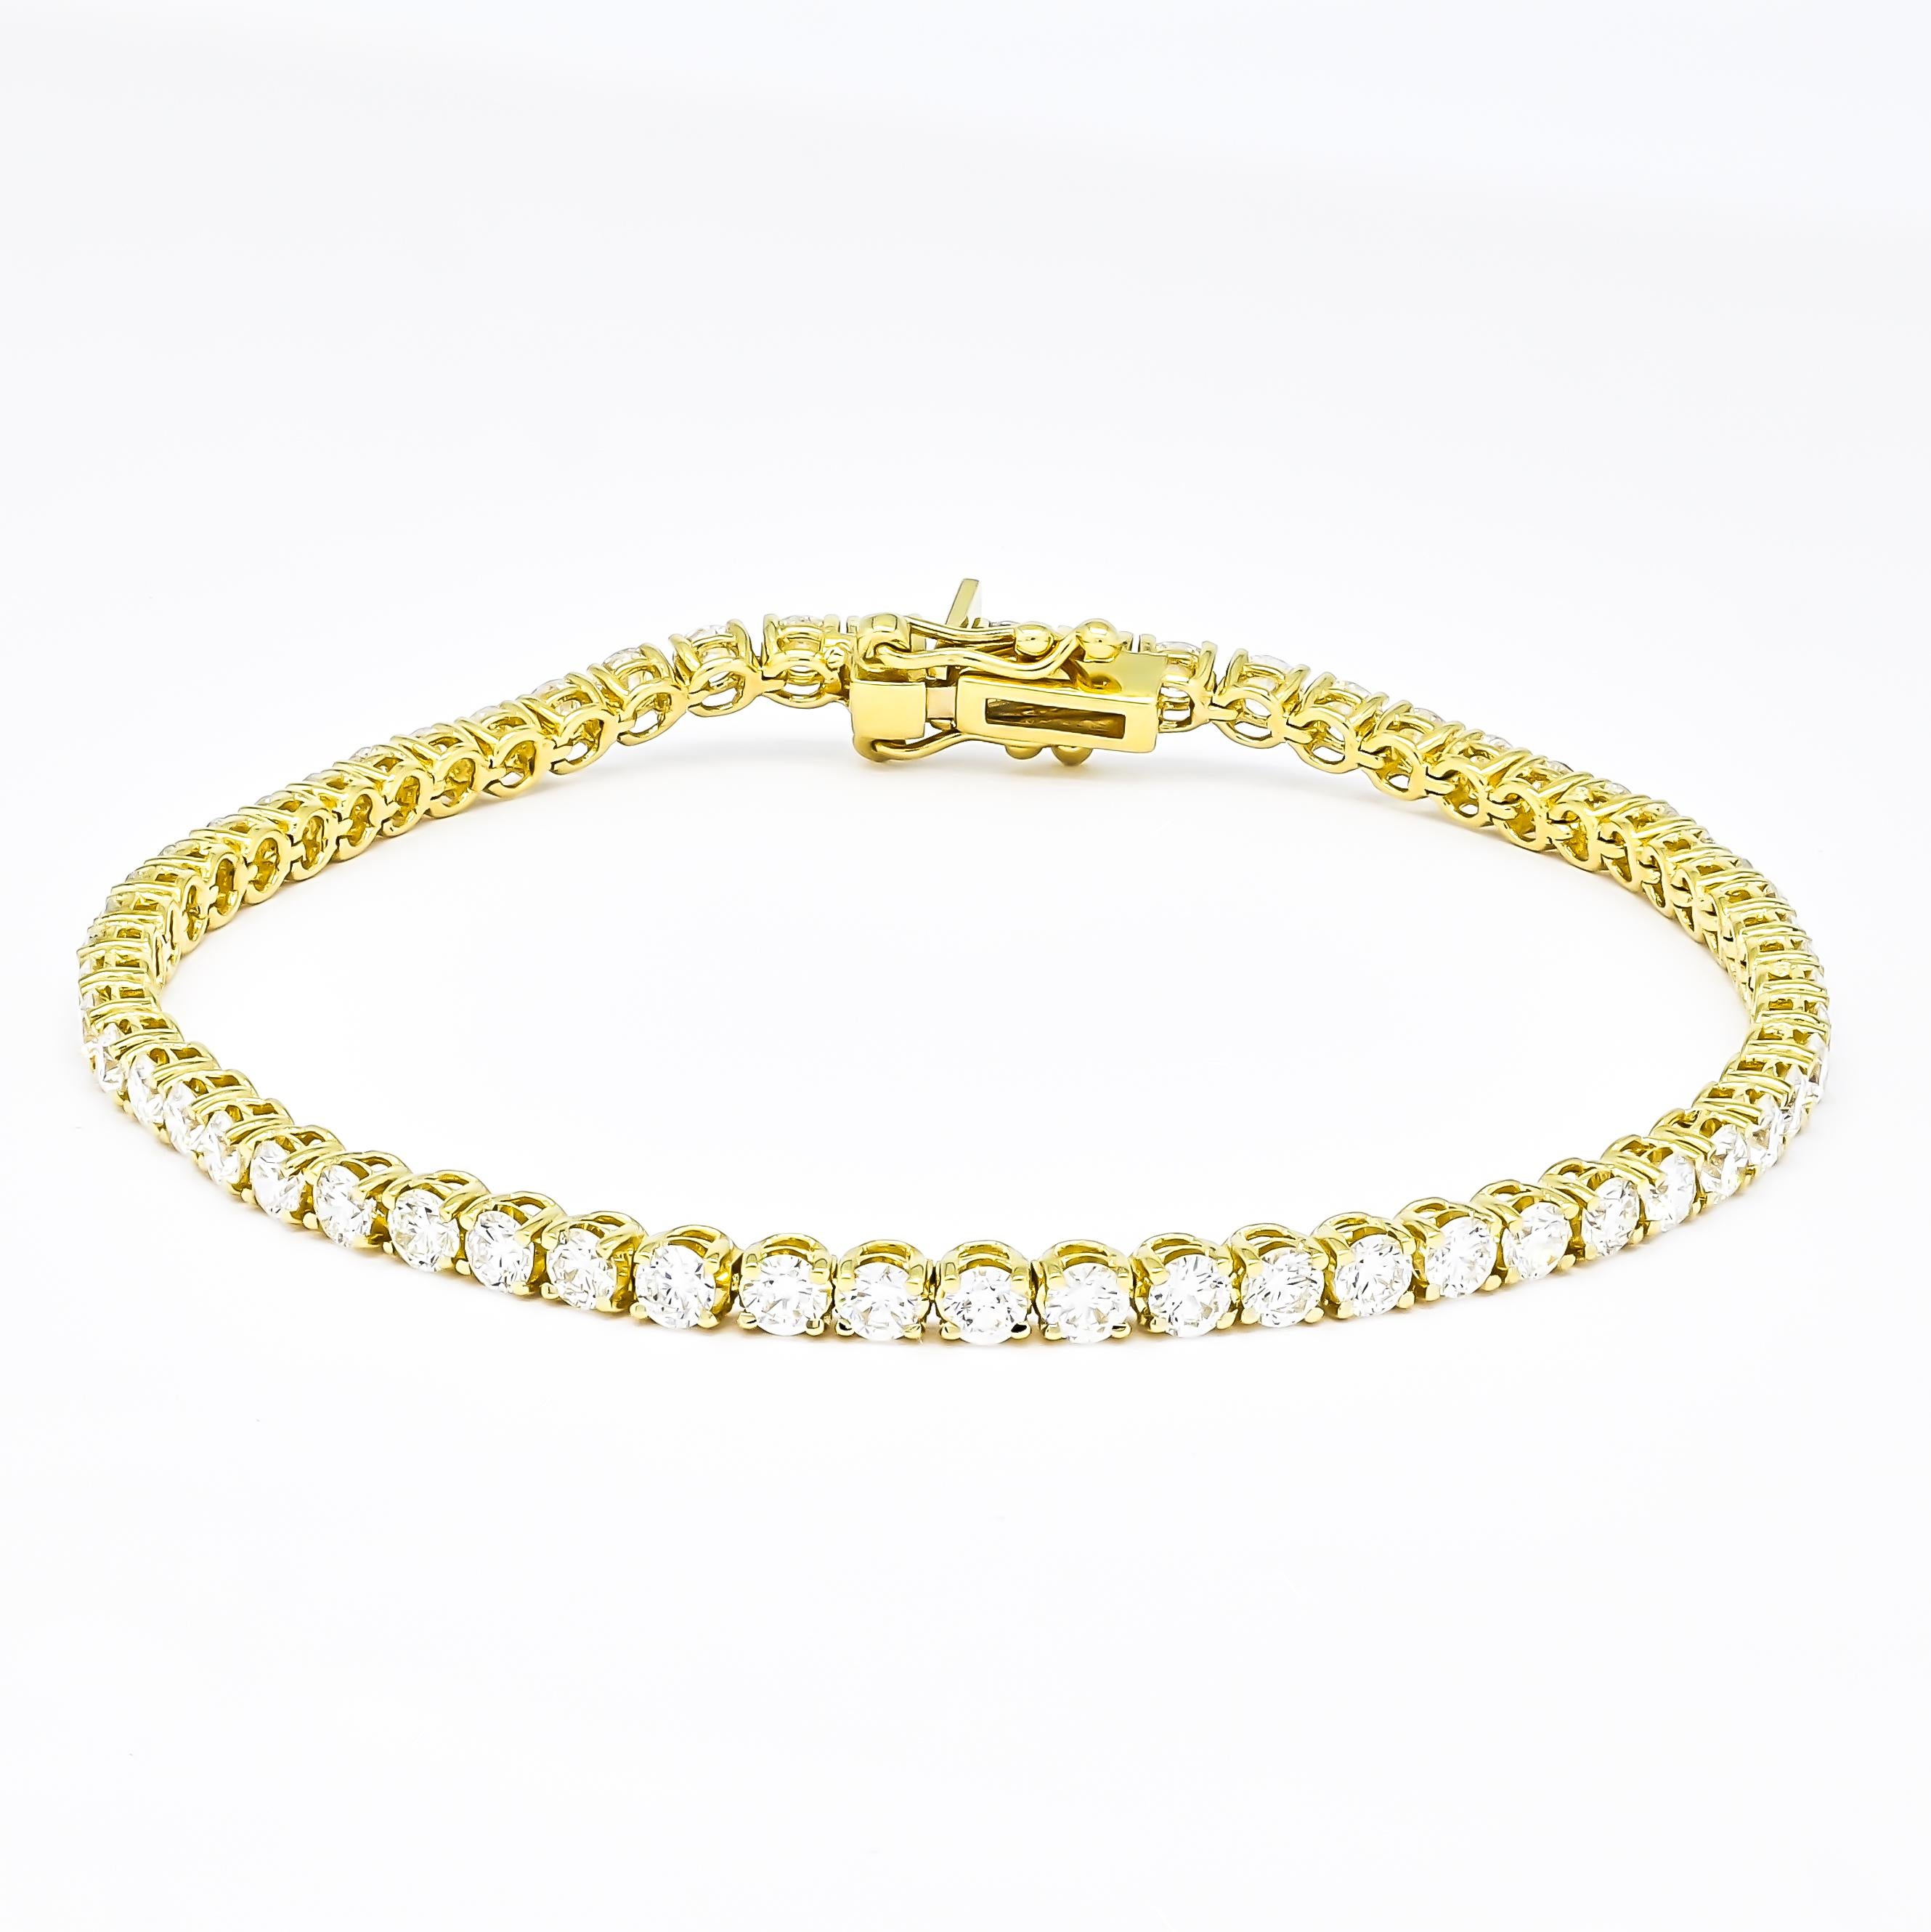 Taille brillant Classic 5.00Carat Four Prong Tennis Bracelet en or jaune 18k Diamants naturels en vente